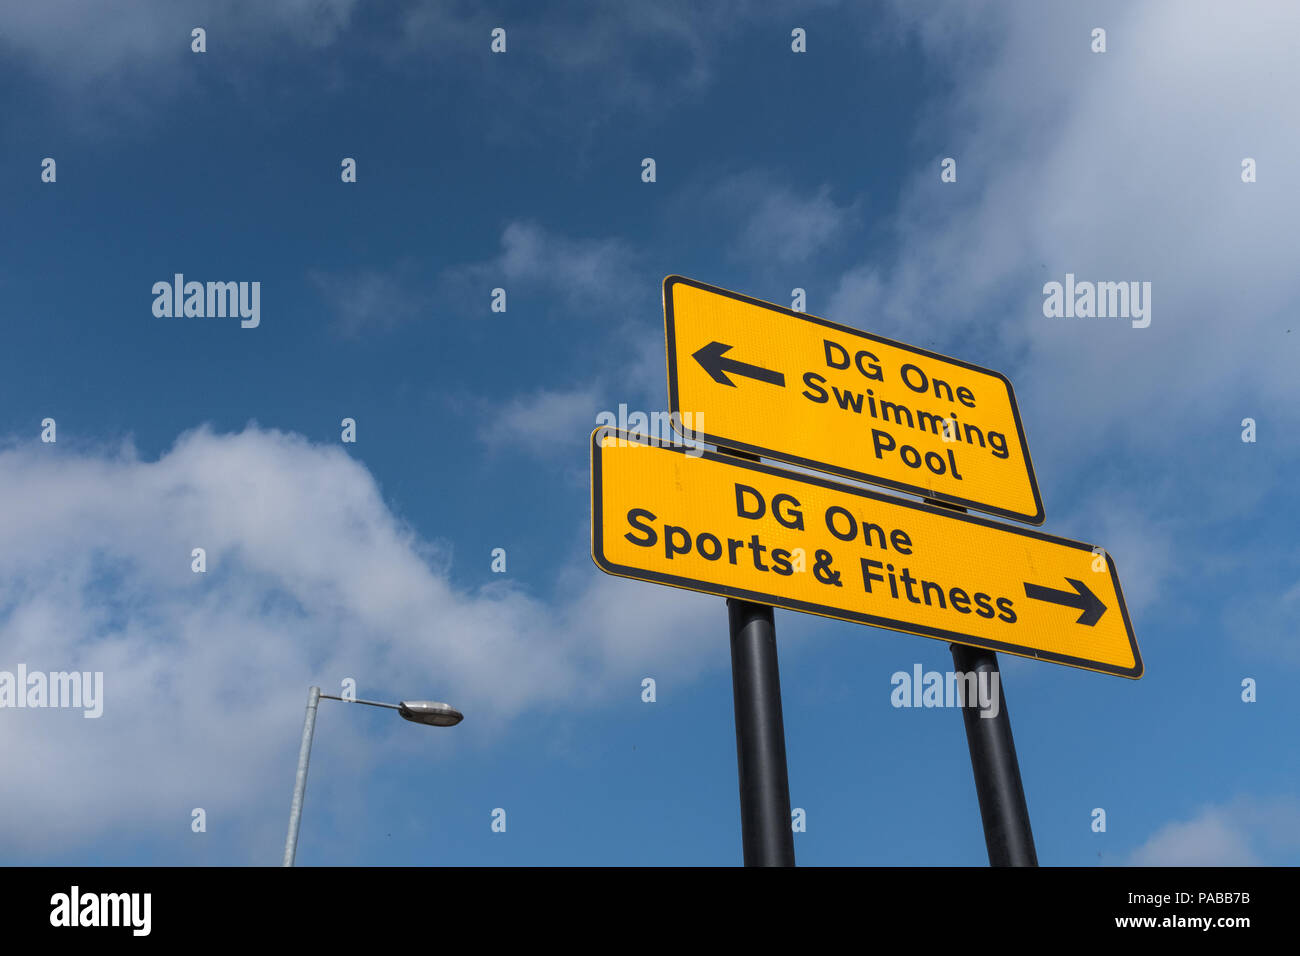 Street Signs en Dumfries, Escocia, dirigiendo al público a la DG uno de instalaciones deportivas. Foto de stock